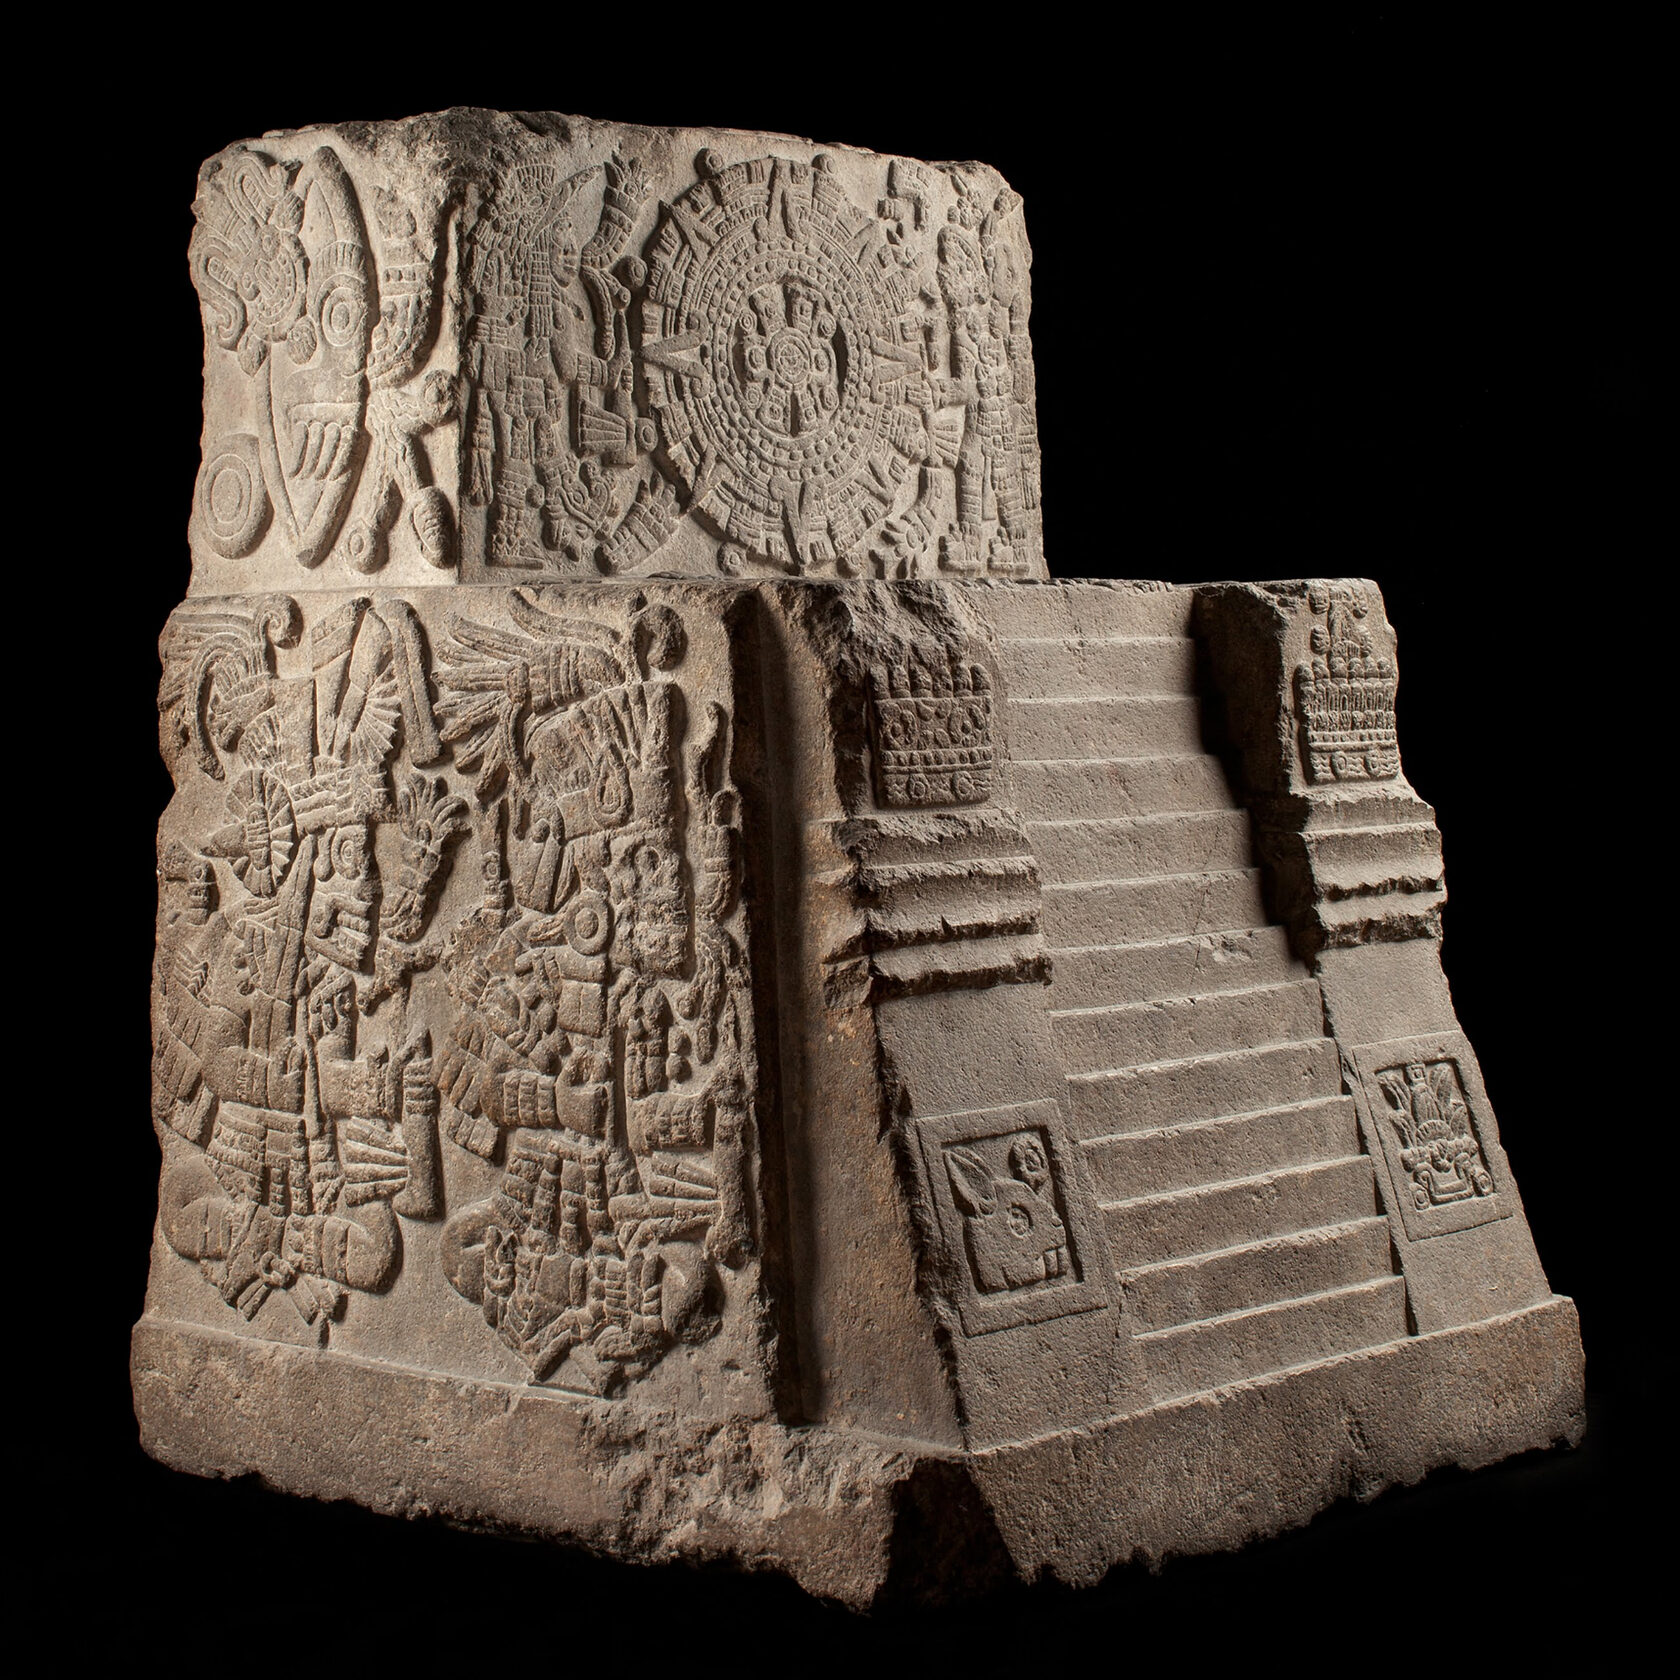 Трон Монтесумы II. Ацтеки, 1507 г. н.э. Коллекция Museo Nacional de Antropología, México. Был создан в честь церемонии нового огня.